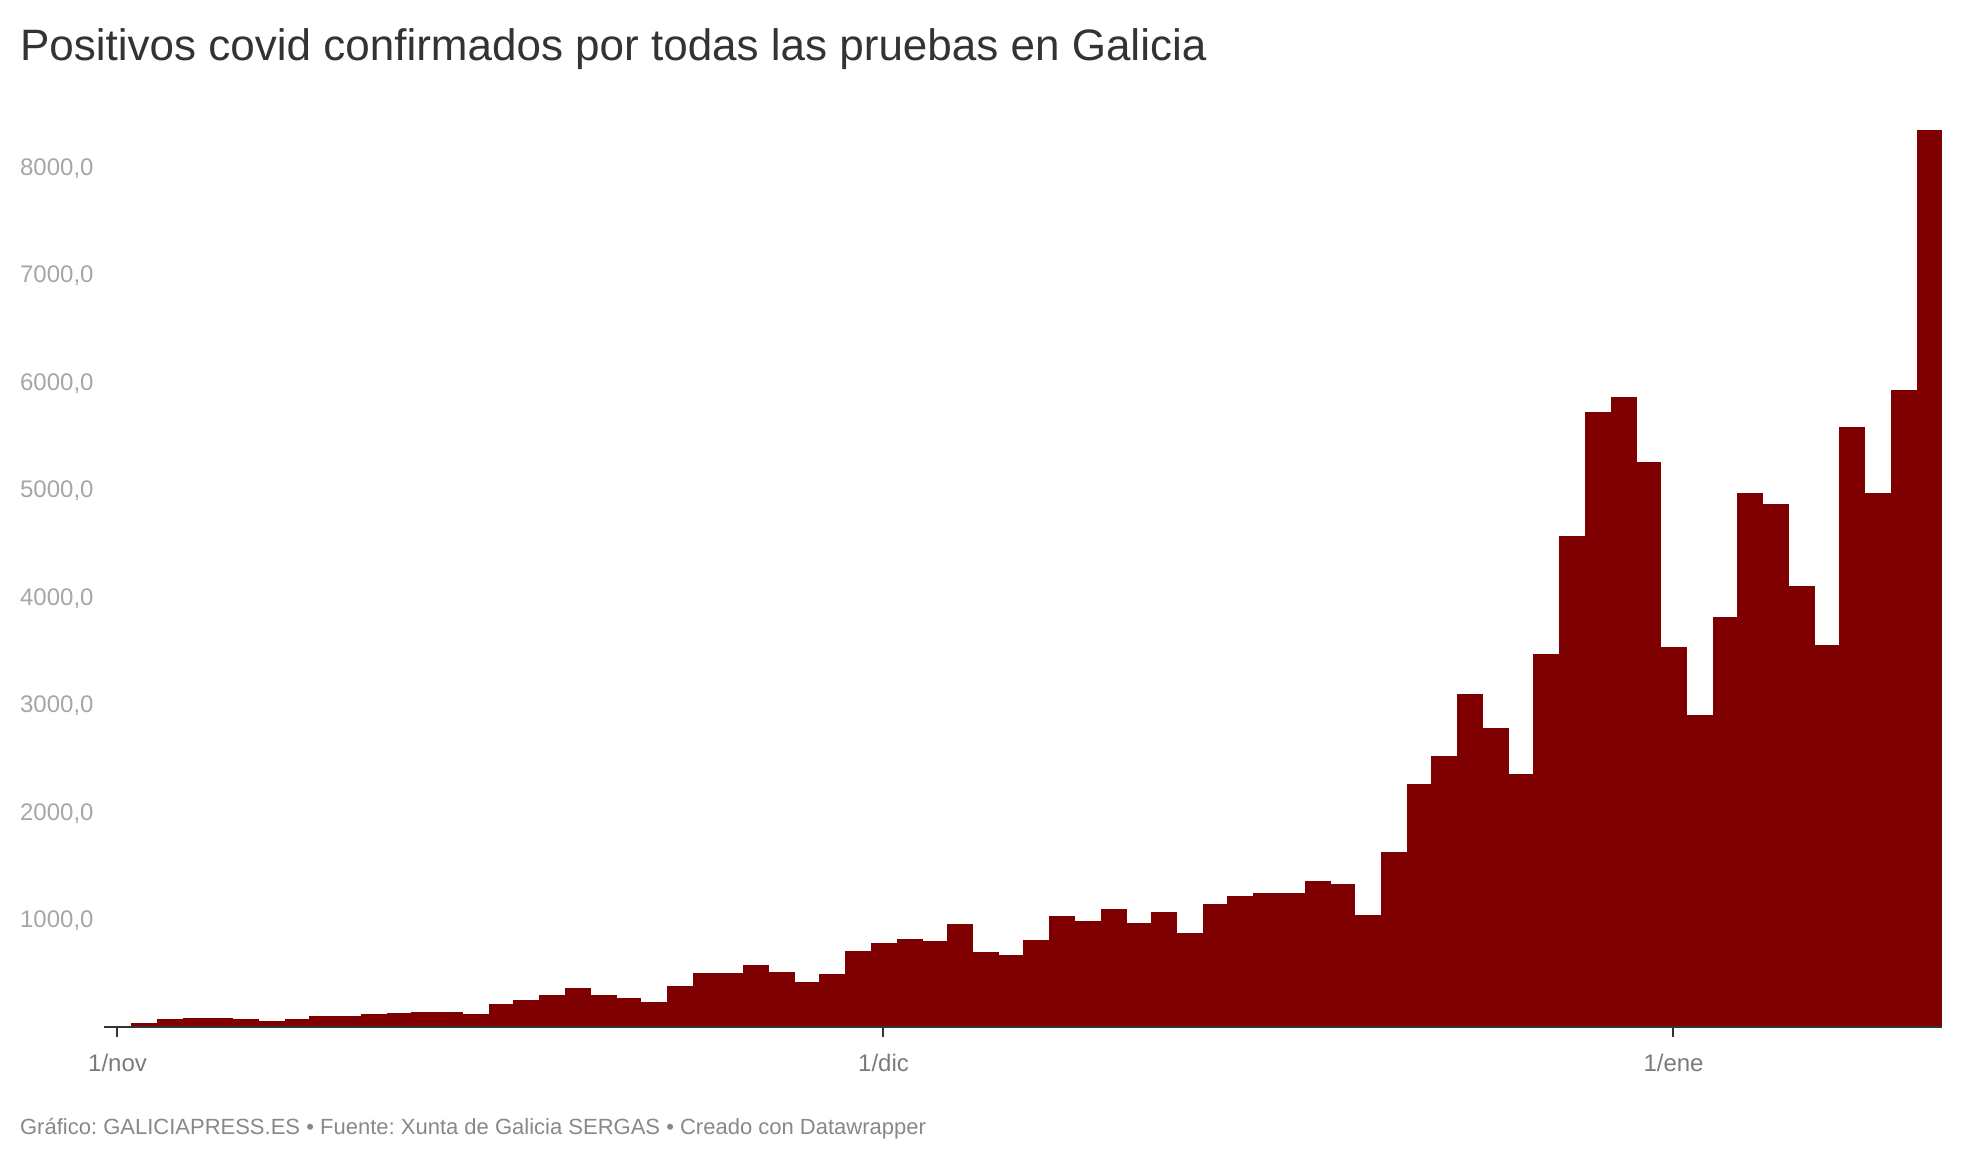 Rércord de positivos covid en Galicia, casi 9.000, indica que podemos llegar a 100.000 casos activos este mes